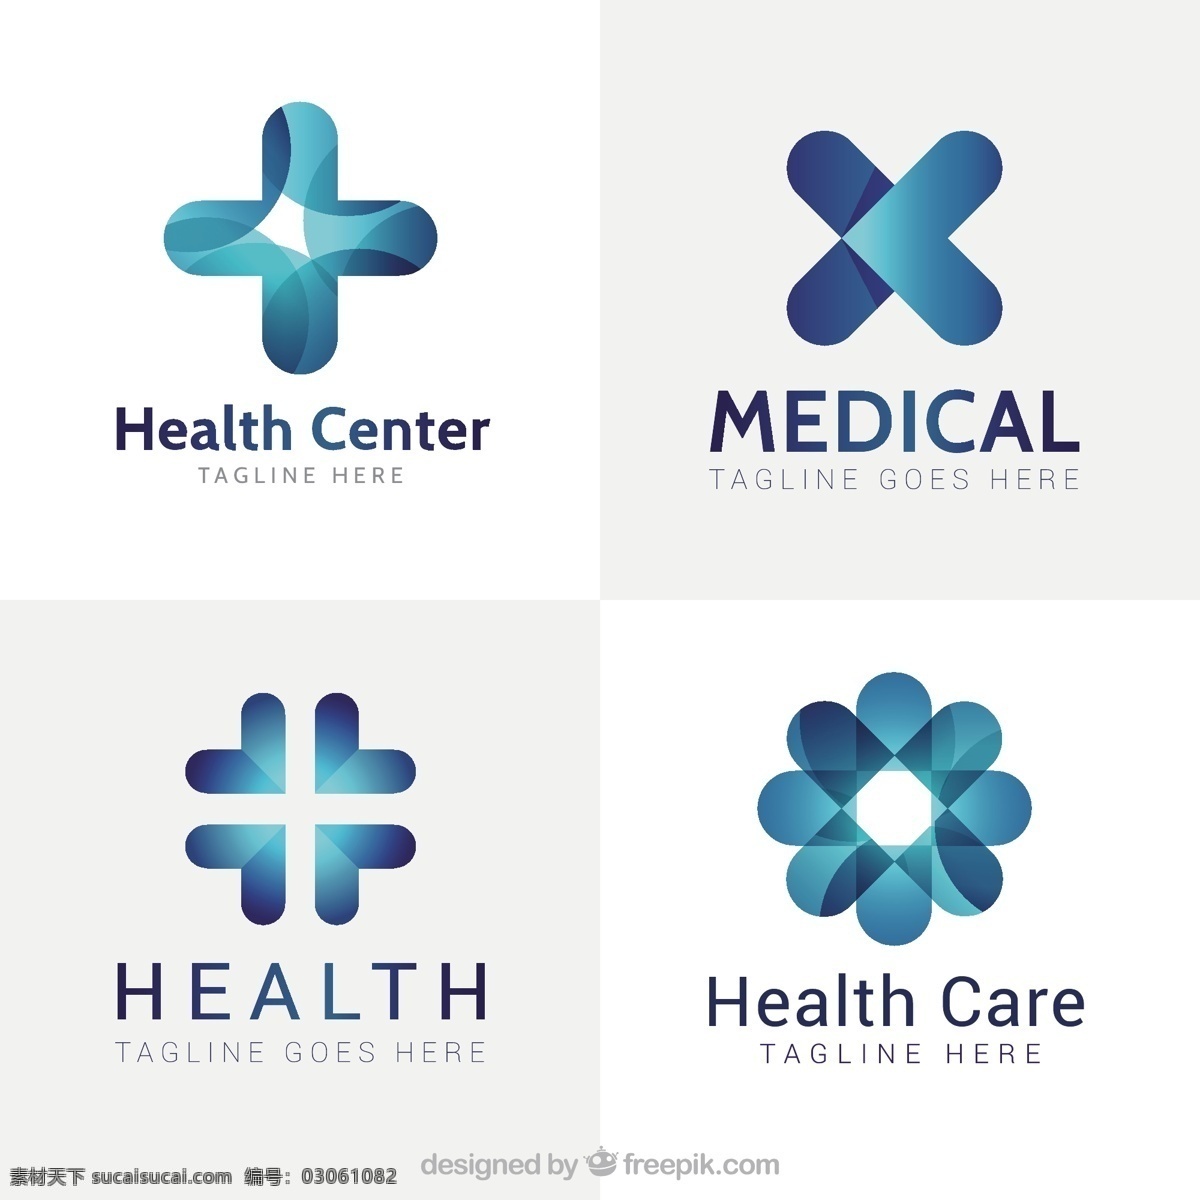 现代 医学 中心 标志 标识 商业 抽象 医疗 模板 健康 博士 蓝色 形状 医院 交叉 企业 医药 公司 品牌 抽象标识 企业身份 符号 白色